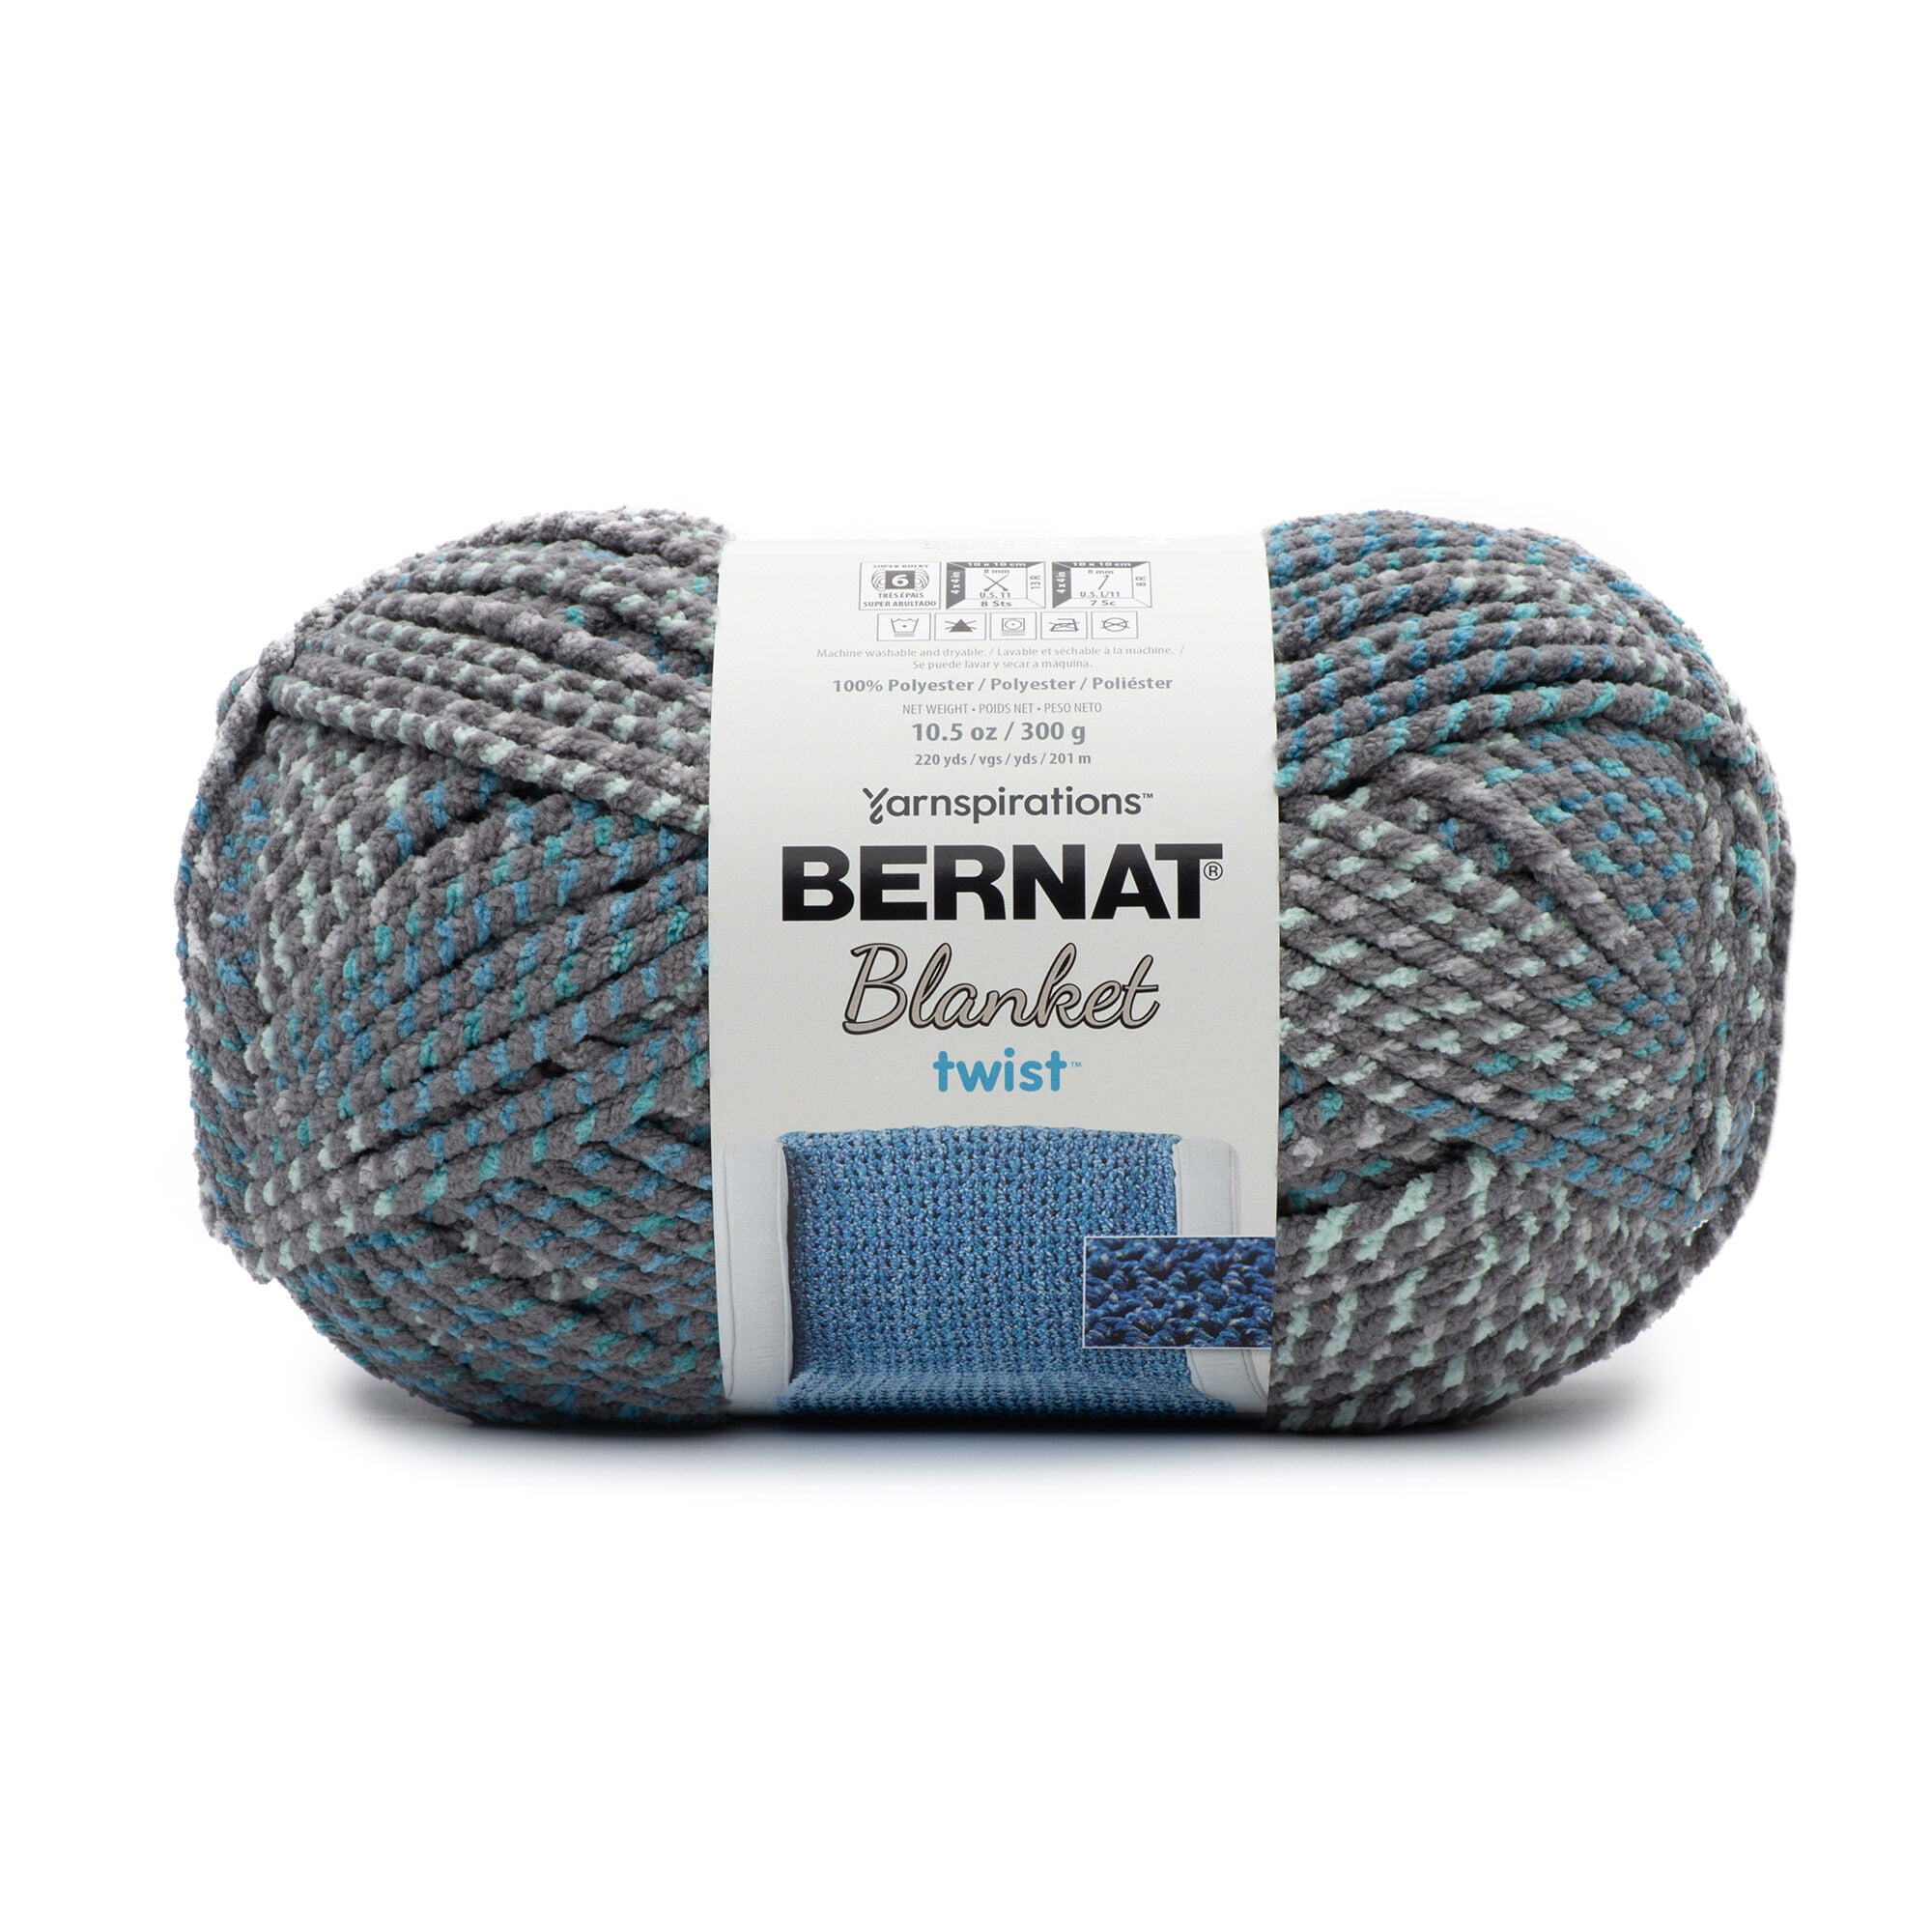 Bernat Blanket Twist Yarn